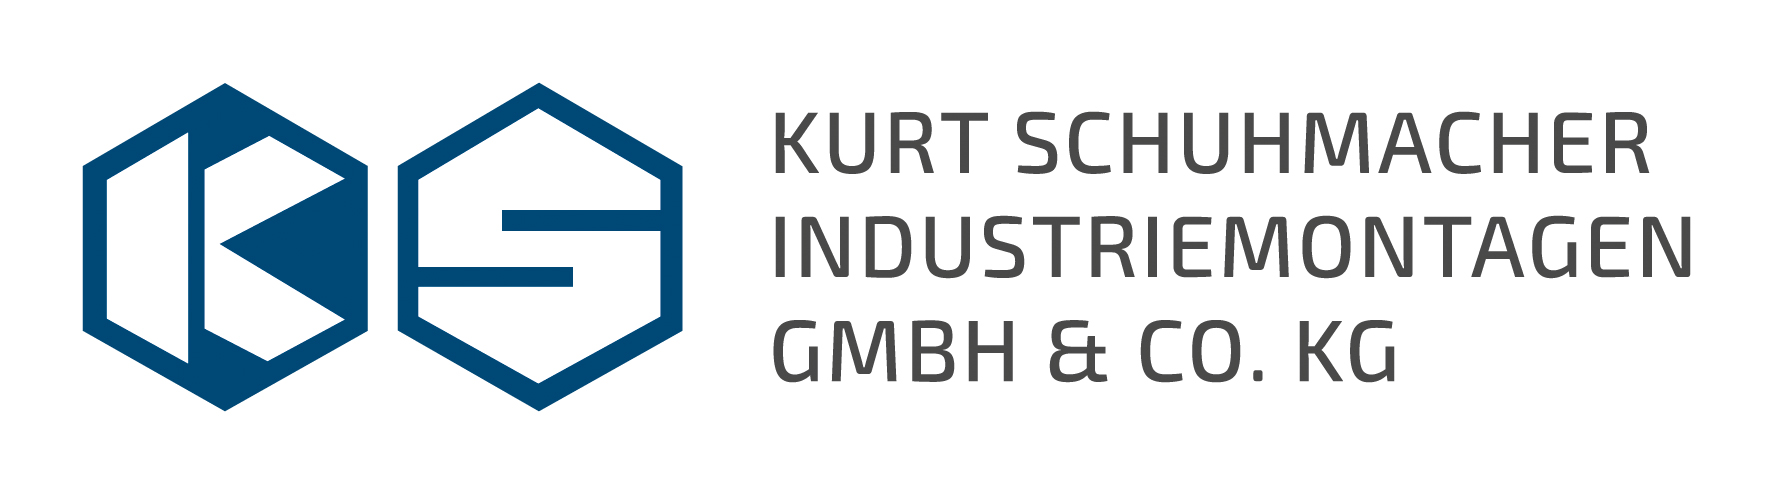 Kurt Schuhmacher Industriemontagen_Logoanpassung_final